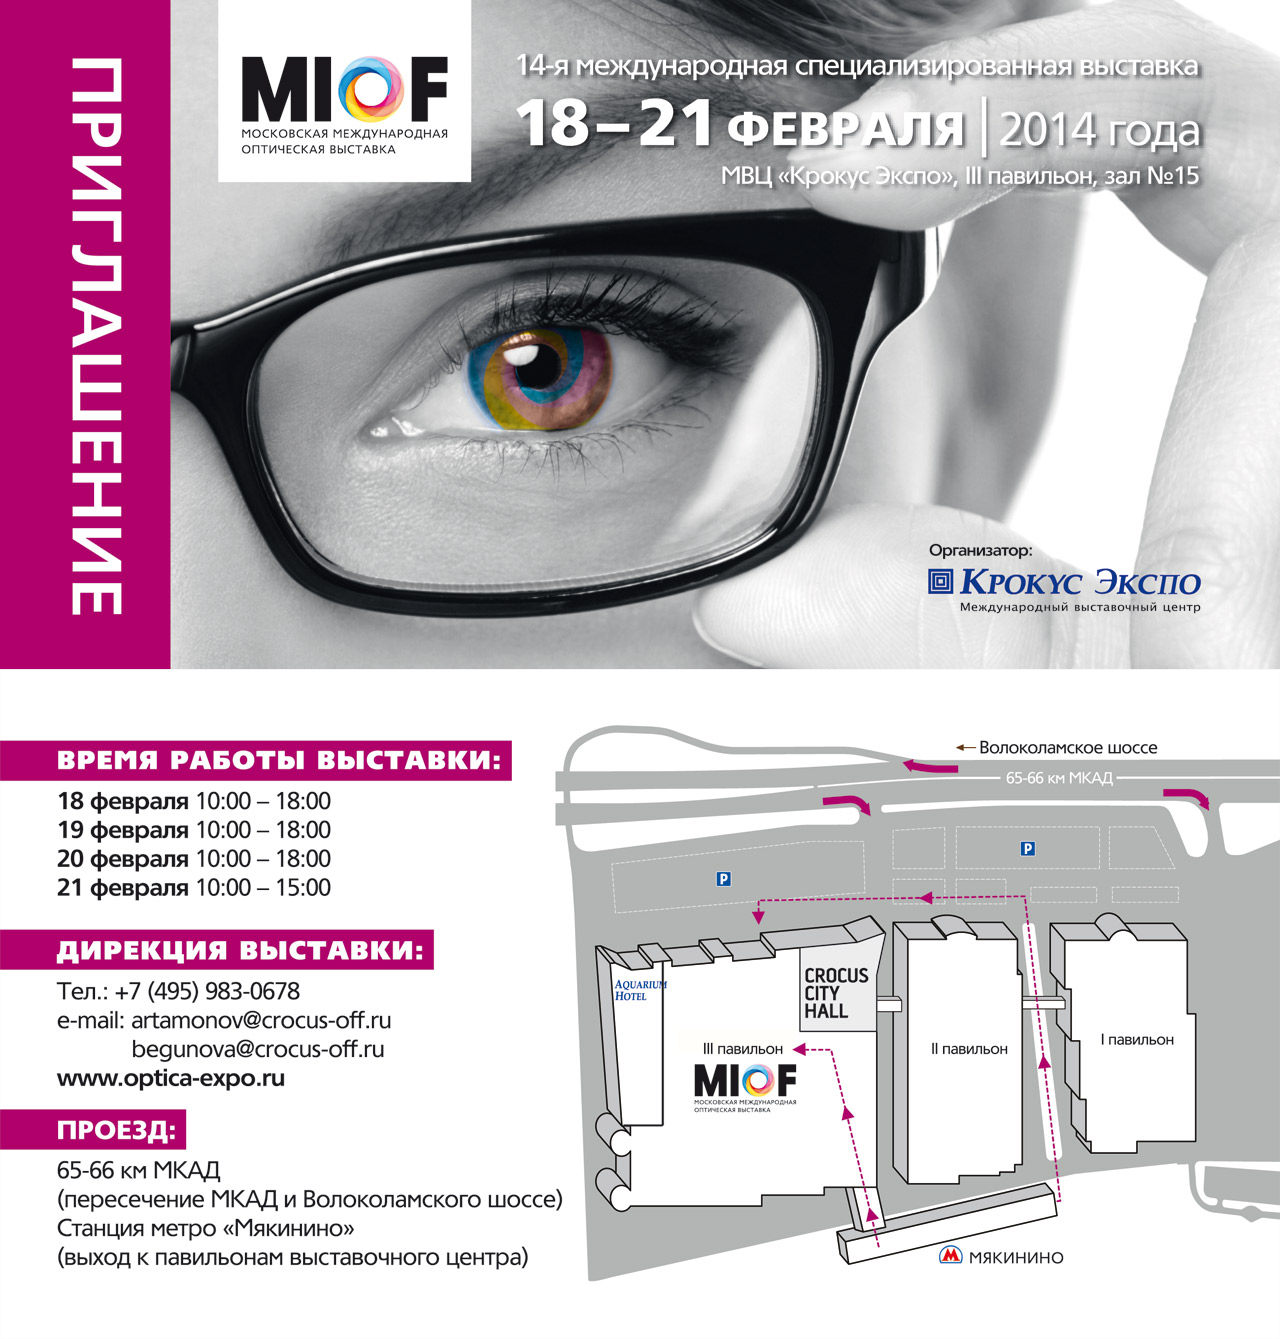 Пригласительный билет на выставку MIOF, Москва, Крокус Экспо, 18-21.02.2014